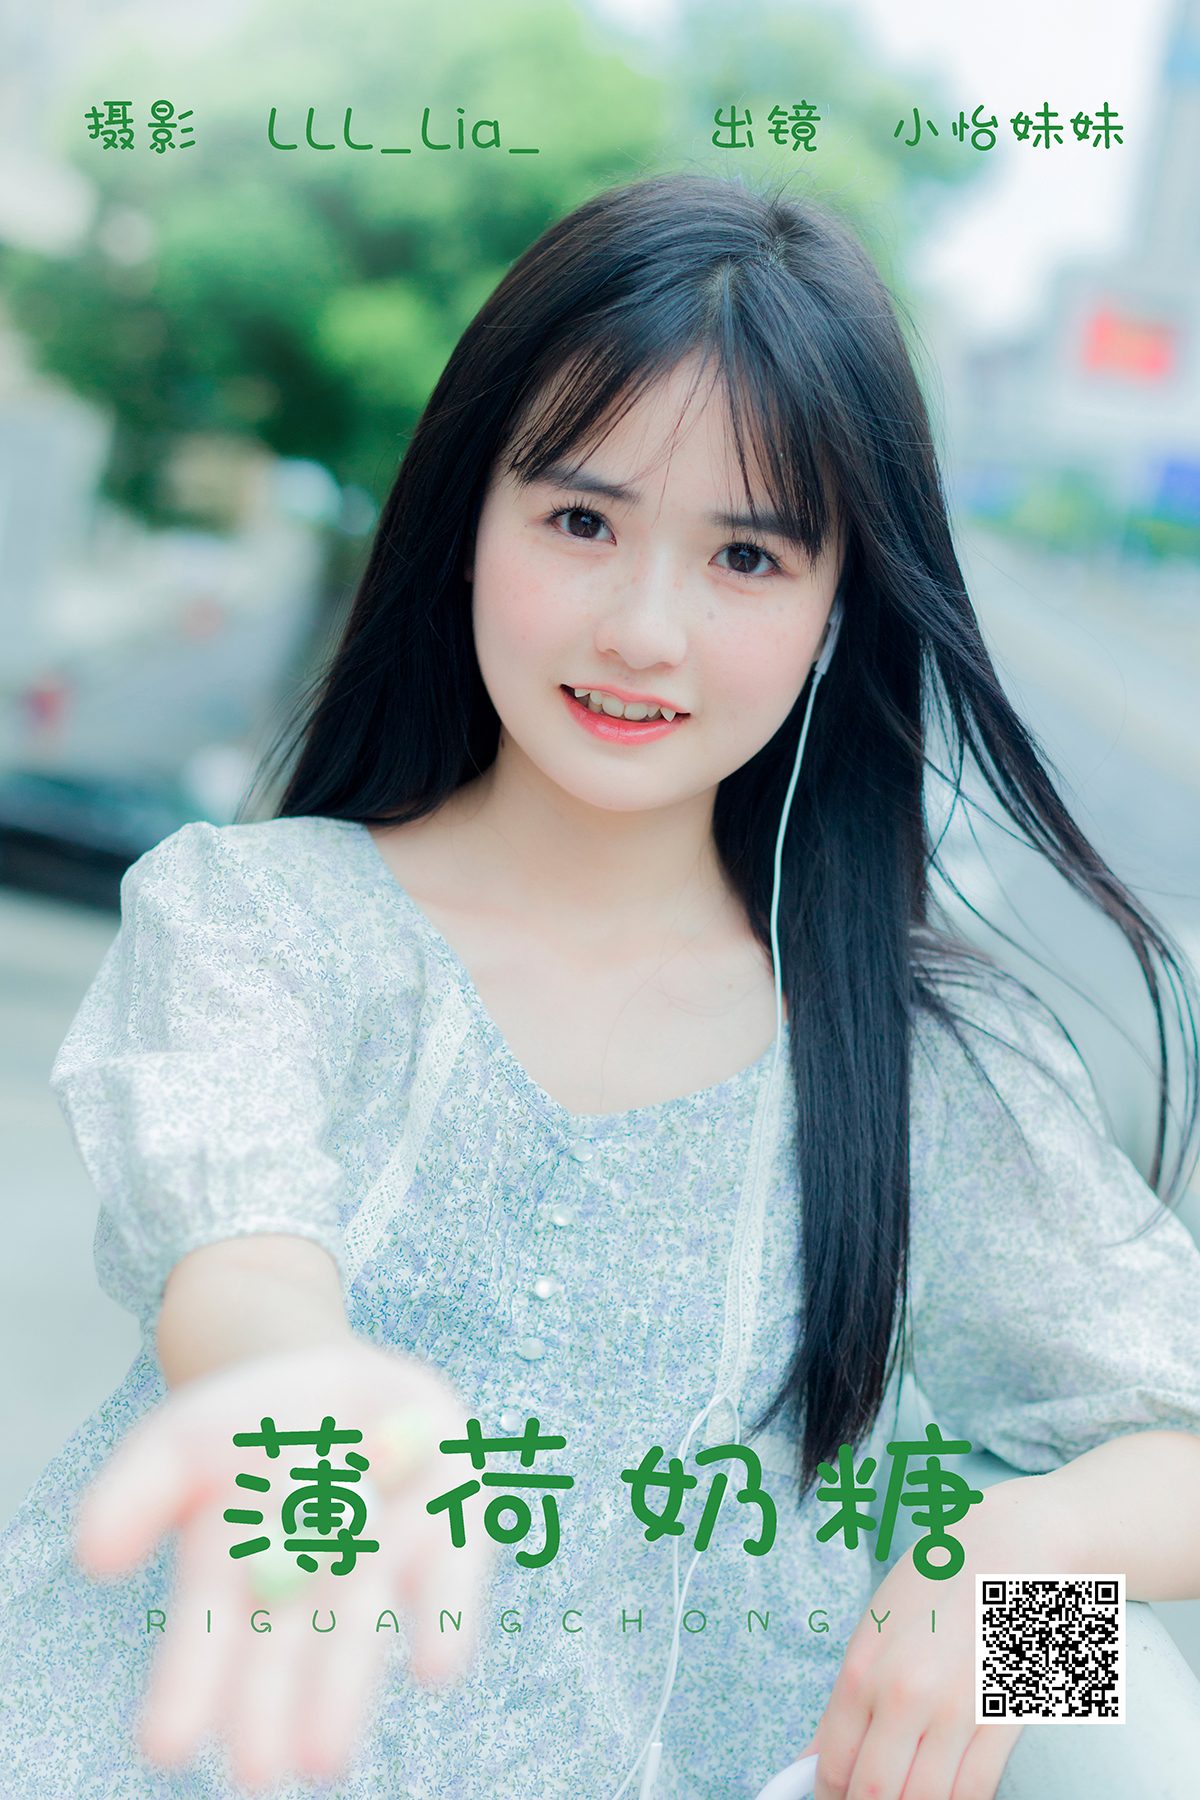 YiTuYu艺图语 Vol 5126 Xiao Yi Mei Mei Cute 0021 5890527447.jpg